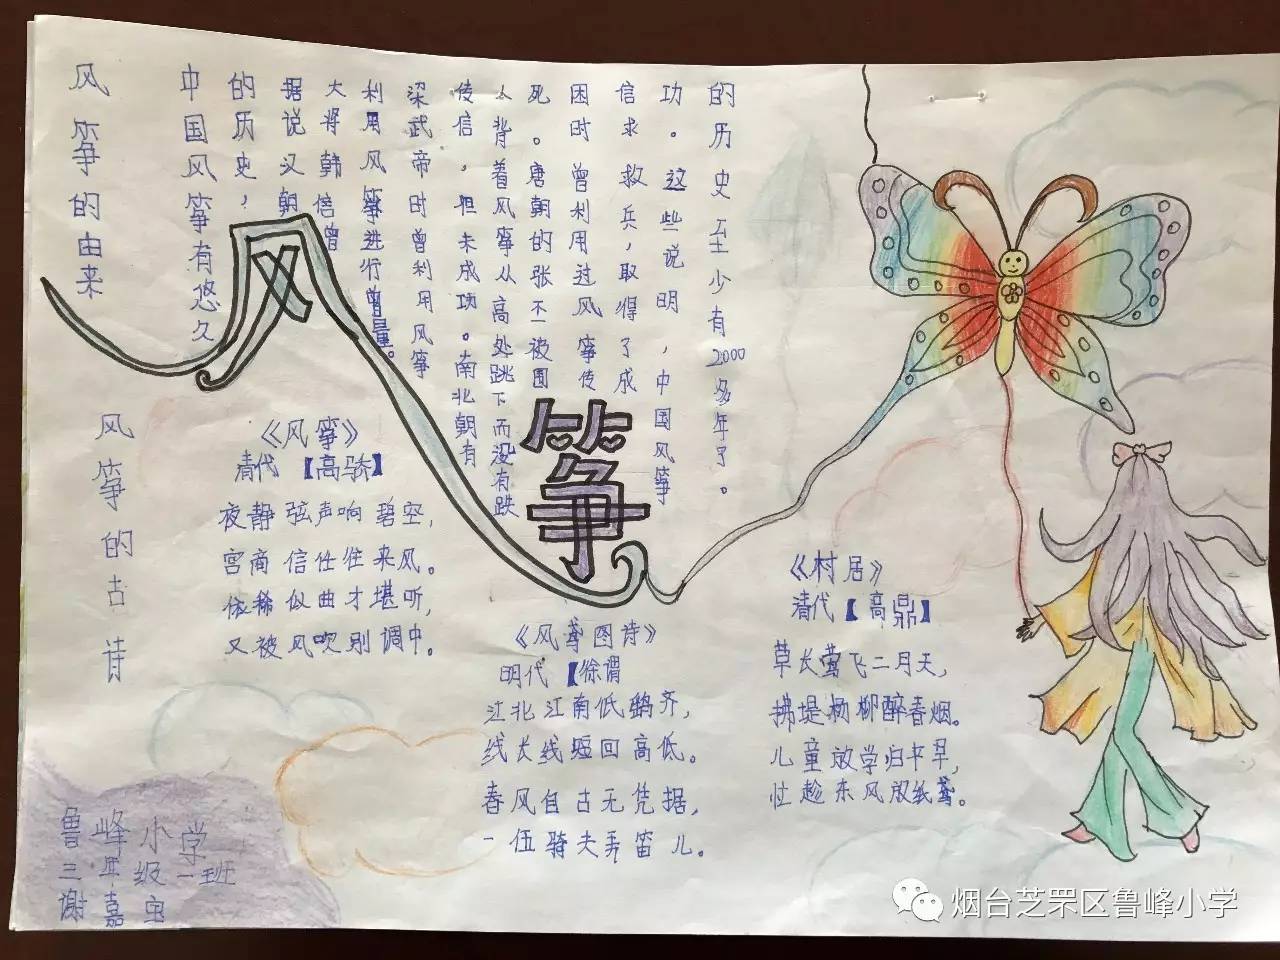 节前期,低年级的孩子用绘画表现出对风筝的喜爱,一幅幅漂亮的手抄报则